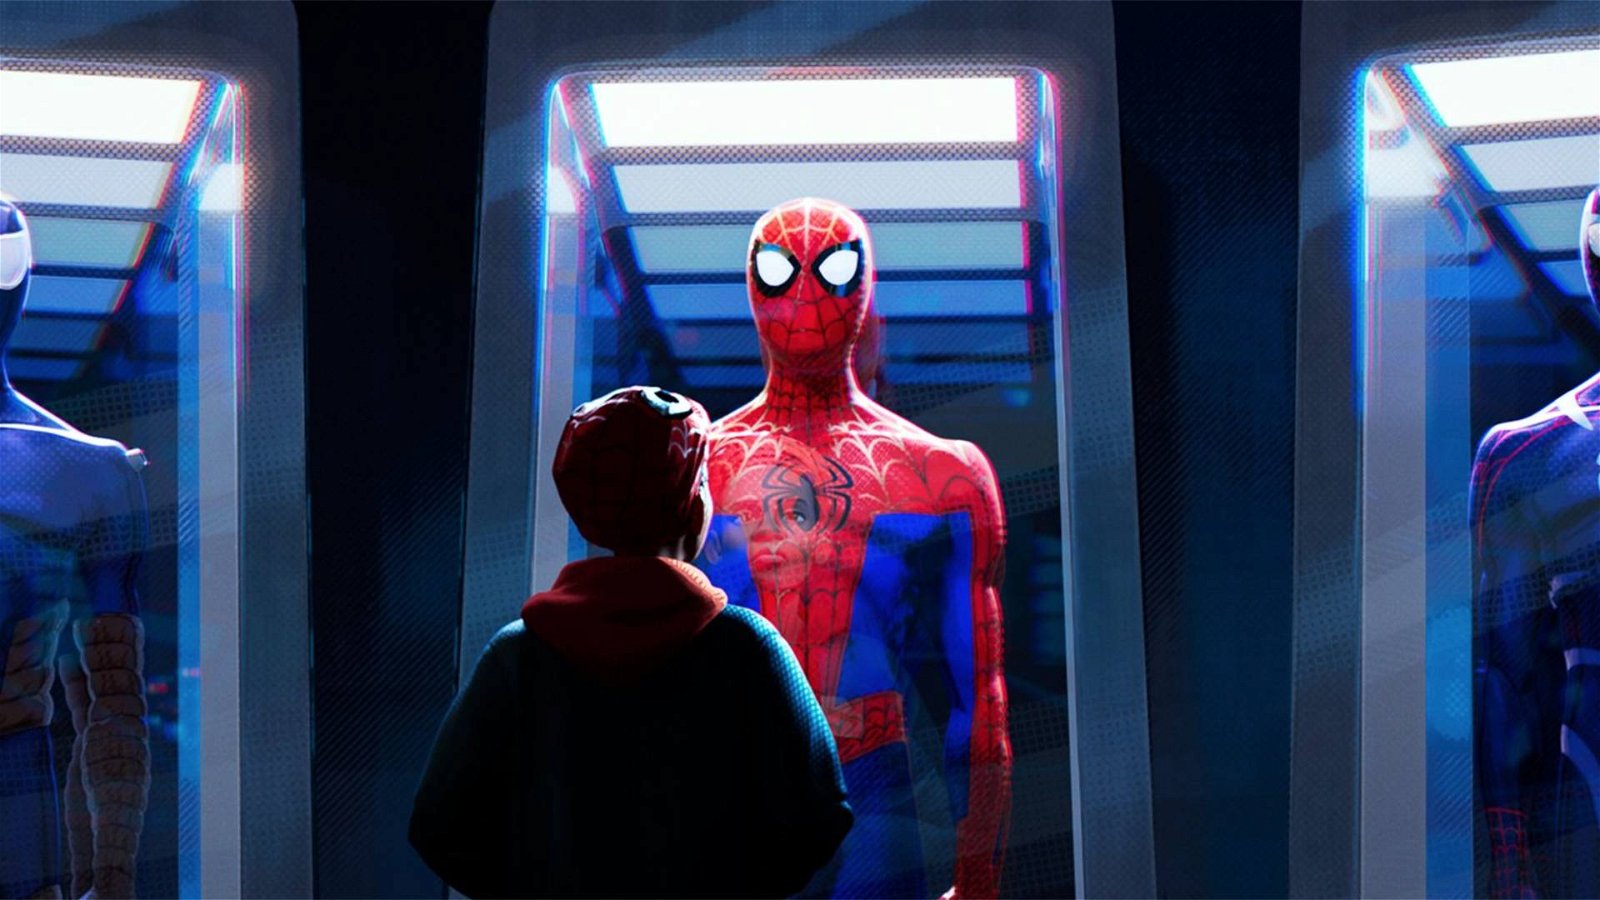 Immagine di Spider-Man: Un nuovo universo arriva in home video! Ecco una clip esclusiva!